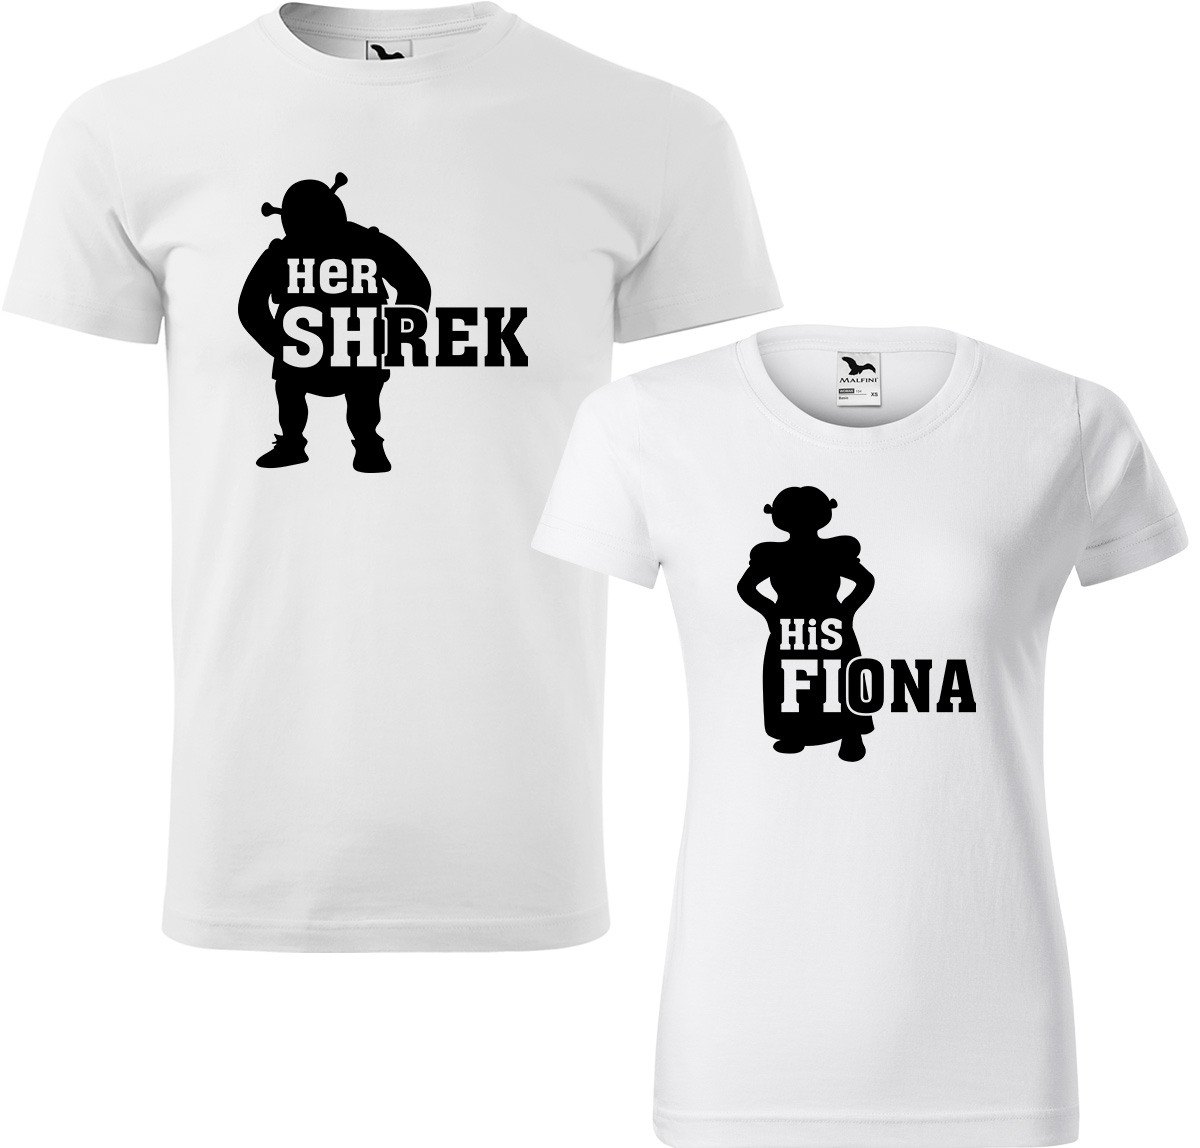 Trička pro páry - Shrek a Fiona Barva: Bílá (00), Velikost dámské tričko: L, Velikost pánské tričko: XL